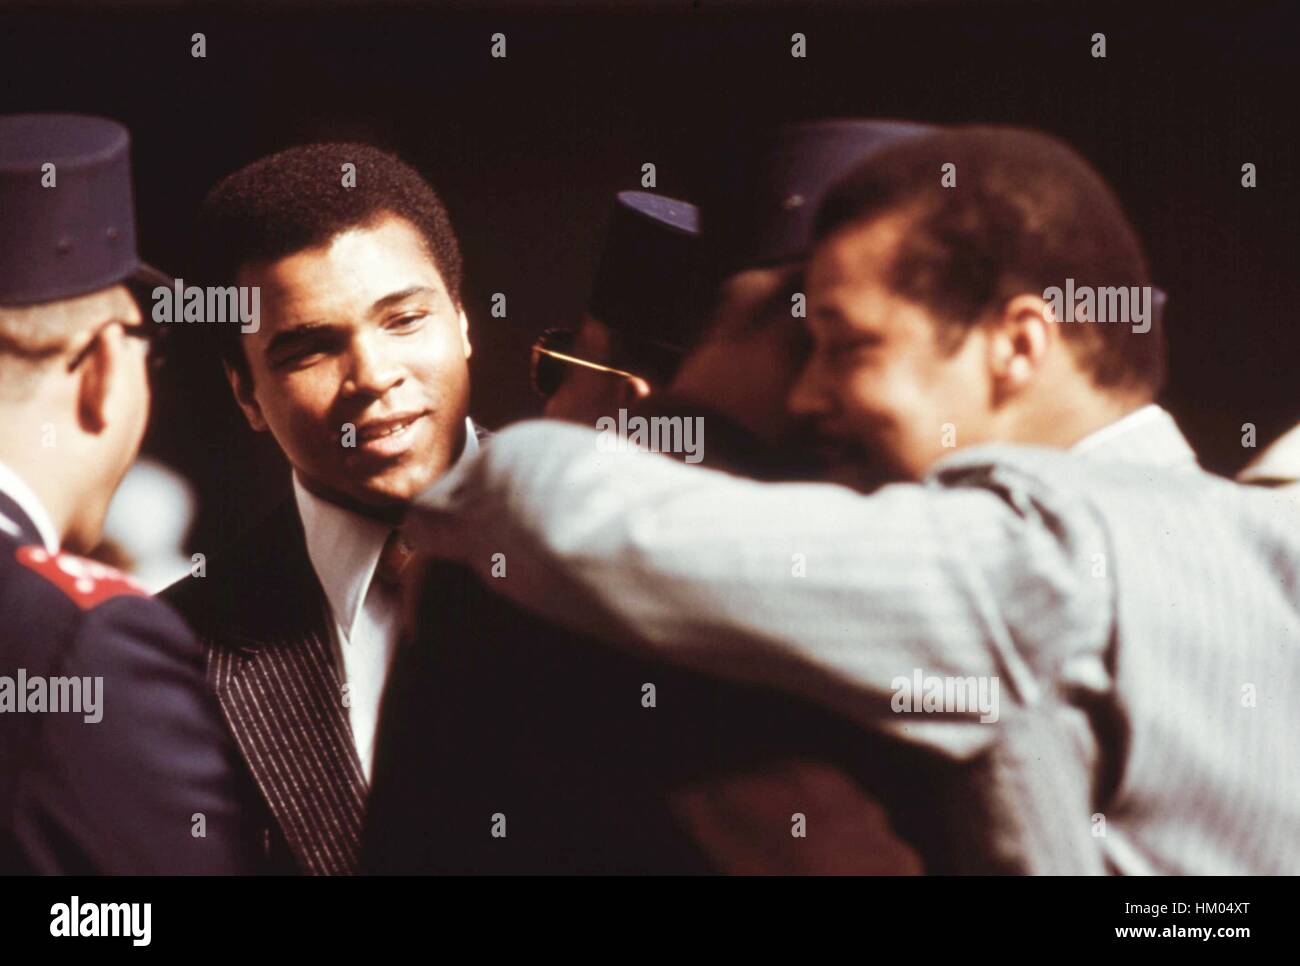 Heavyweight Champion Muhammad Ali assiste un musulmano servizio di sentire Elia Muhammad parlare in Chicago, Illinois, marzo 1974. Immagine cortesia John White/US National Archives. Immagine cortesia archivi nazionali. Foto Stock